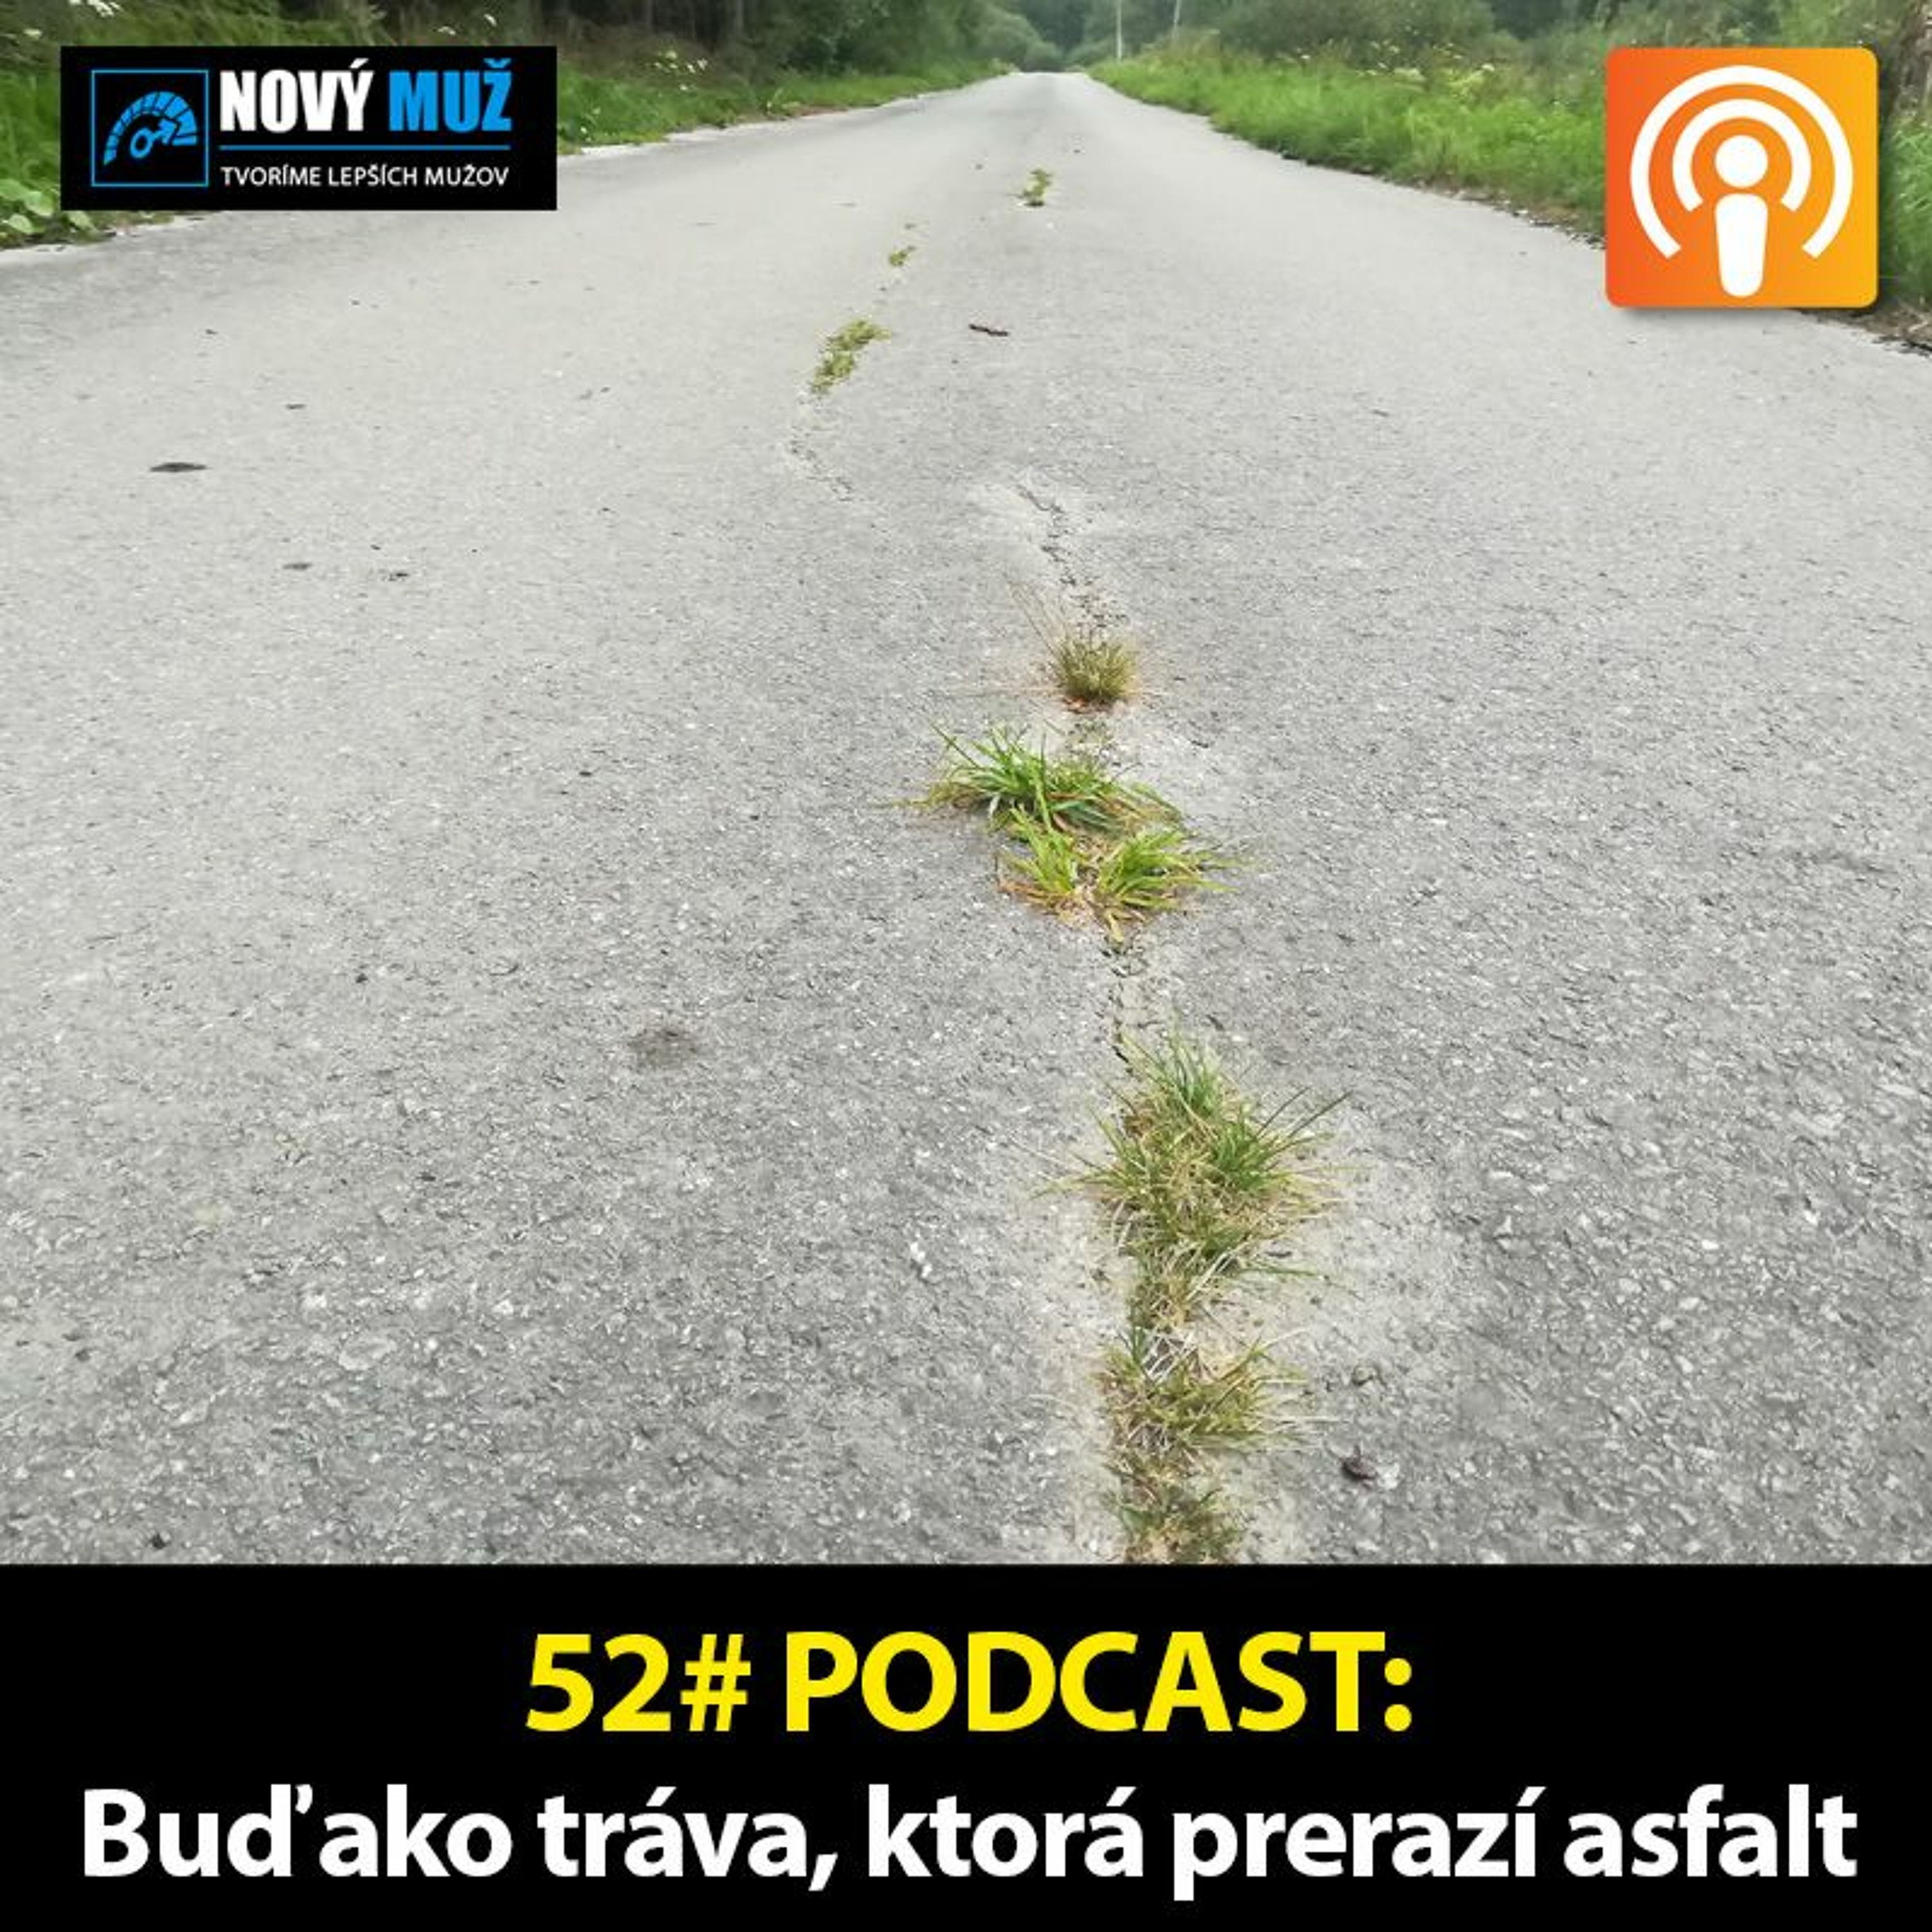 52#PODCAST - Buď ako tráva, ktorá prerazí asfalt